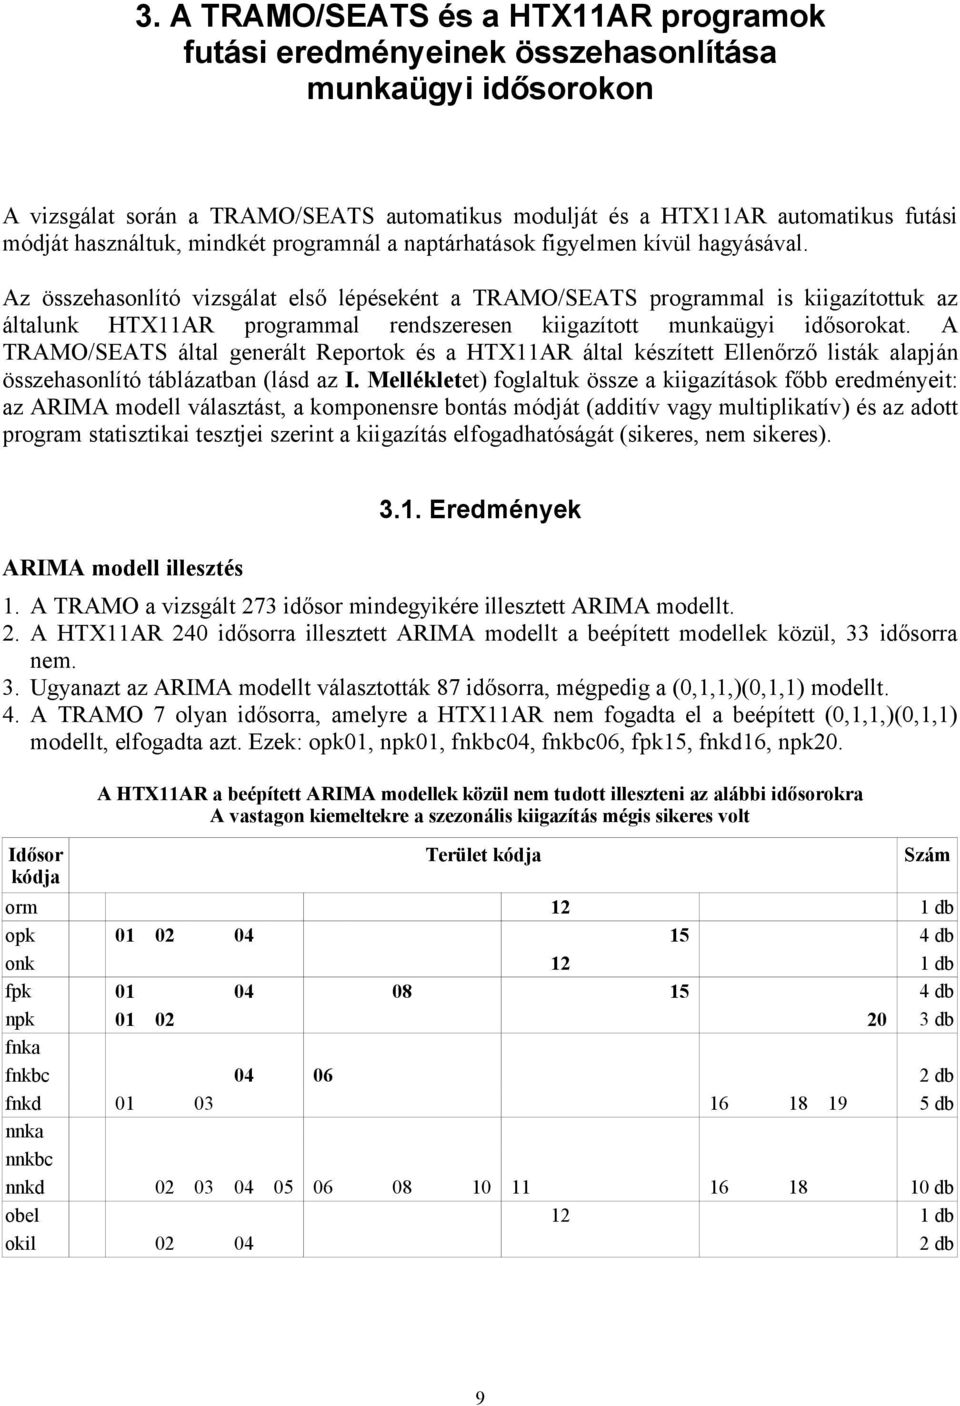 A TRAMO/SEATS áltl generált Reortok és HTX11AR áltl készített Ellenőrző listák lján összehsonlító tábláztbn (lásd z I.